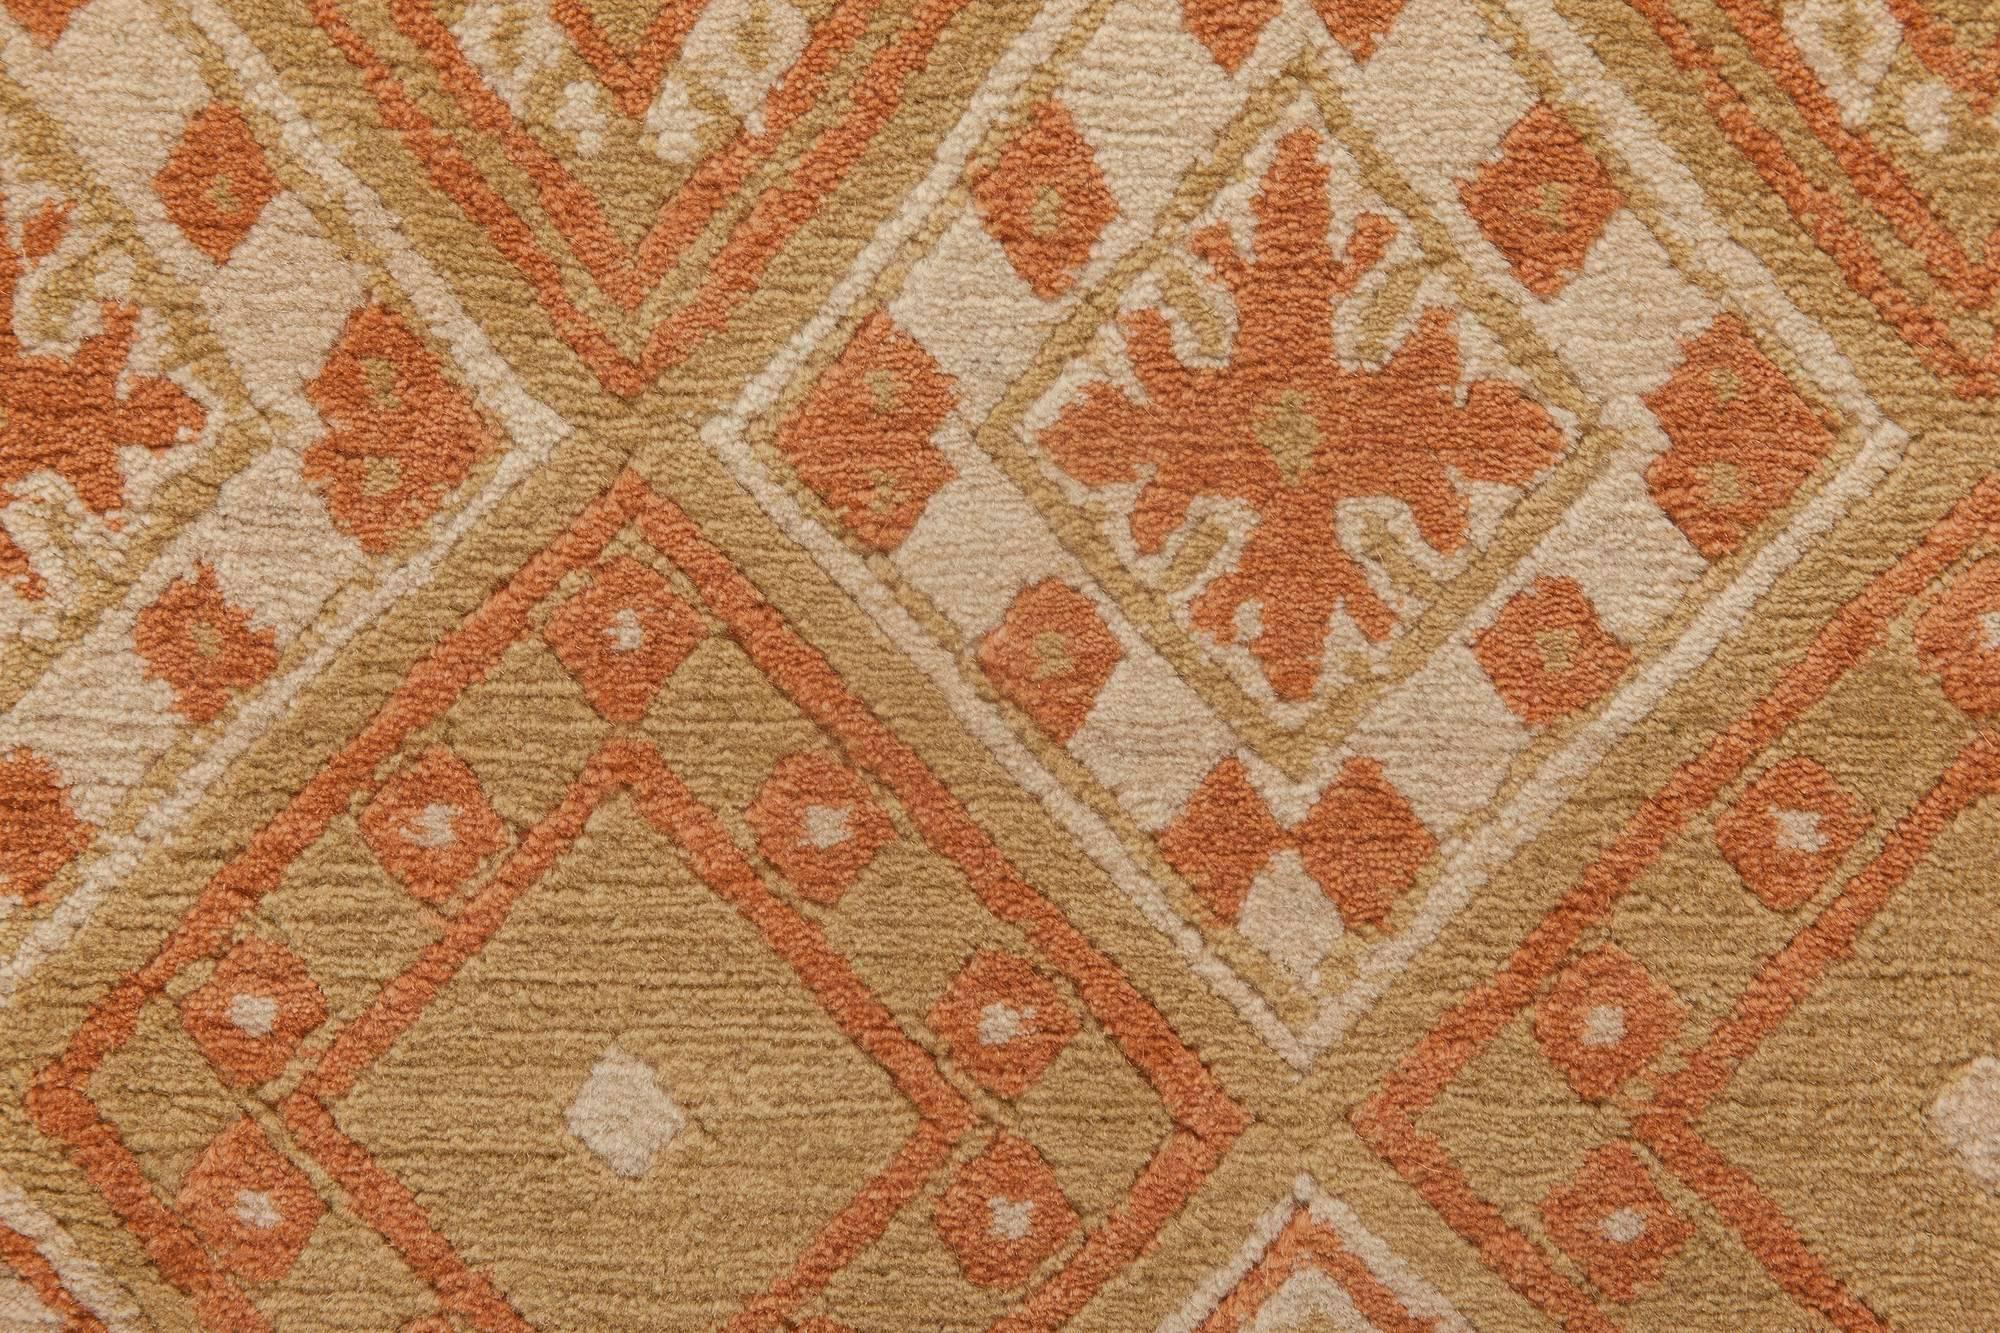 European inspired Tibetan handmade wool rug by Doris Leslie Blau.
Size: 8'0